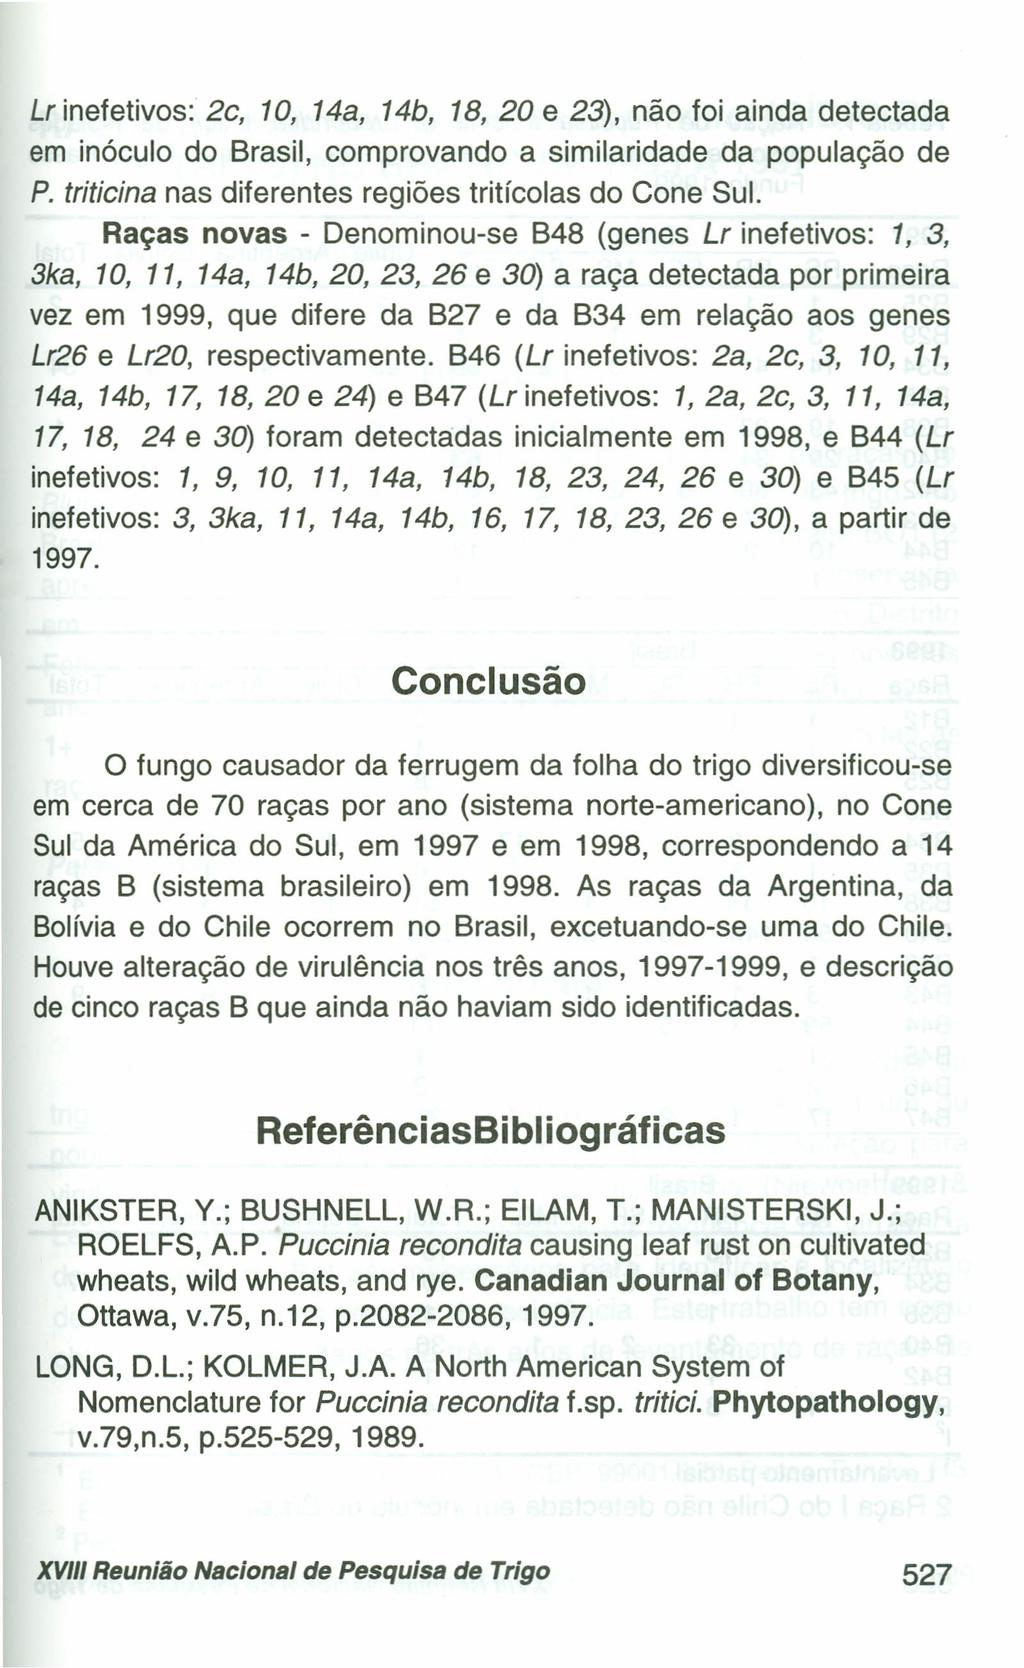 Lr inefetivos: 2c, 10, 14a, 14b, 18, 20 e 23), não foi ainda detectada em inóculo do Brasil, comprovando a similaridade da população de P. triticina nas diferentes regiões tritícolas do Cone Sul.